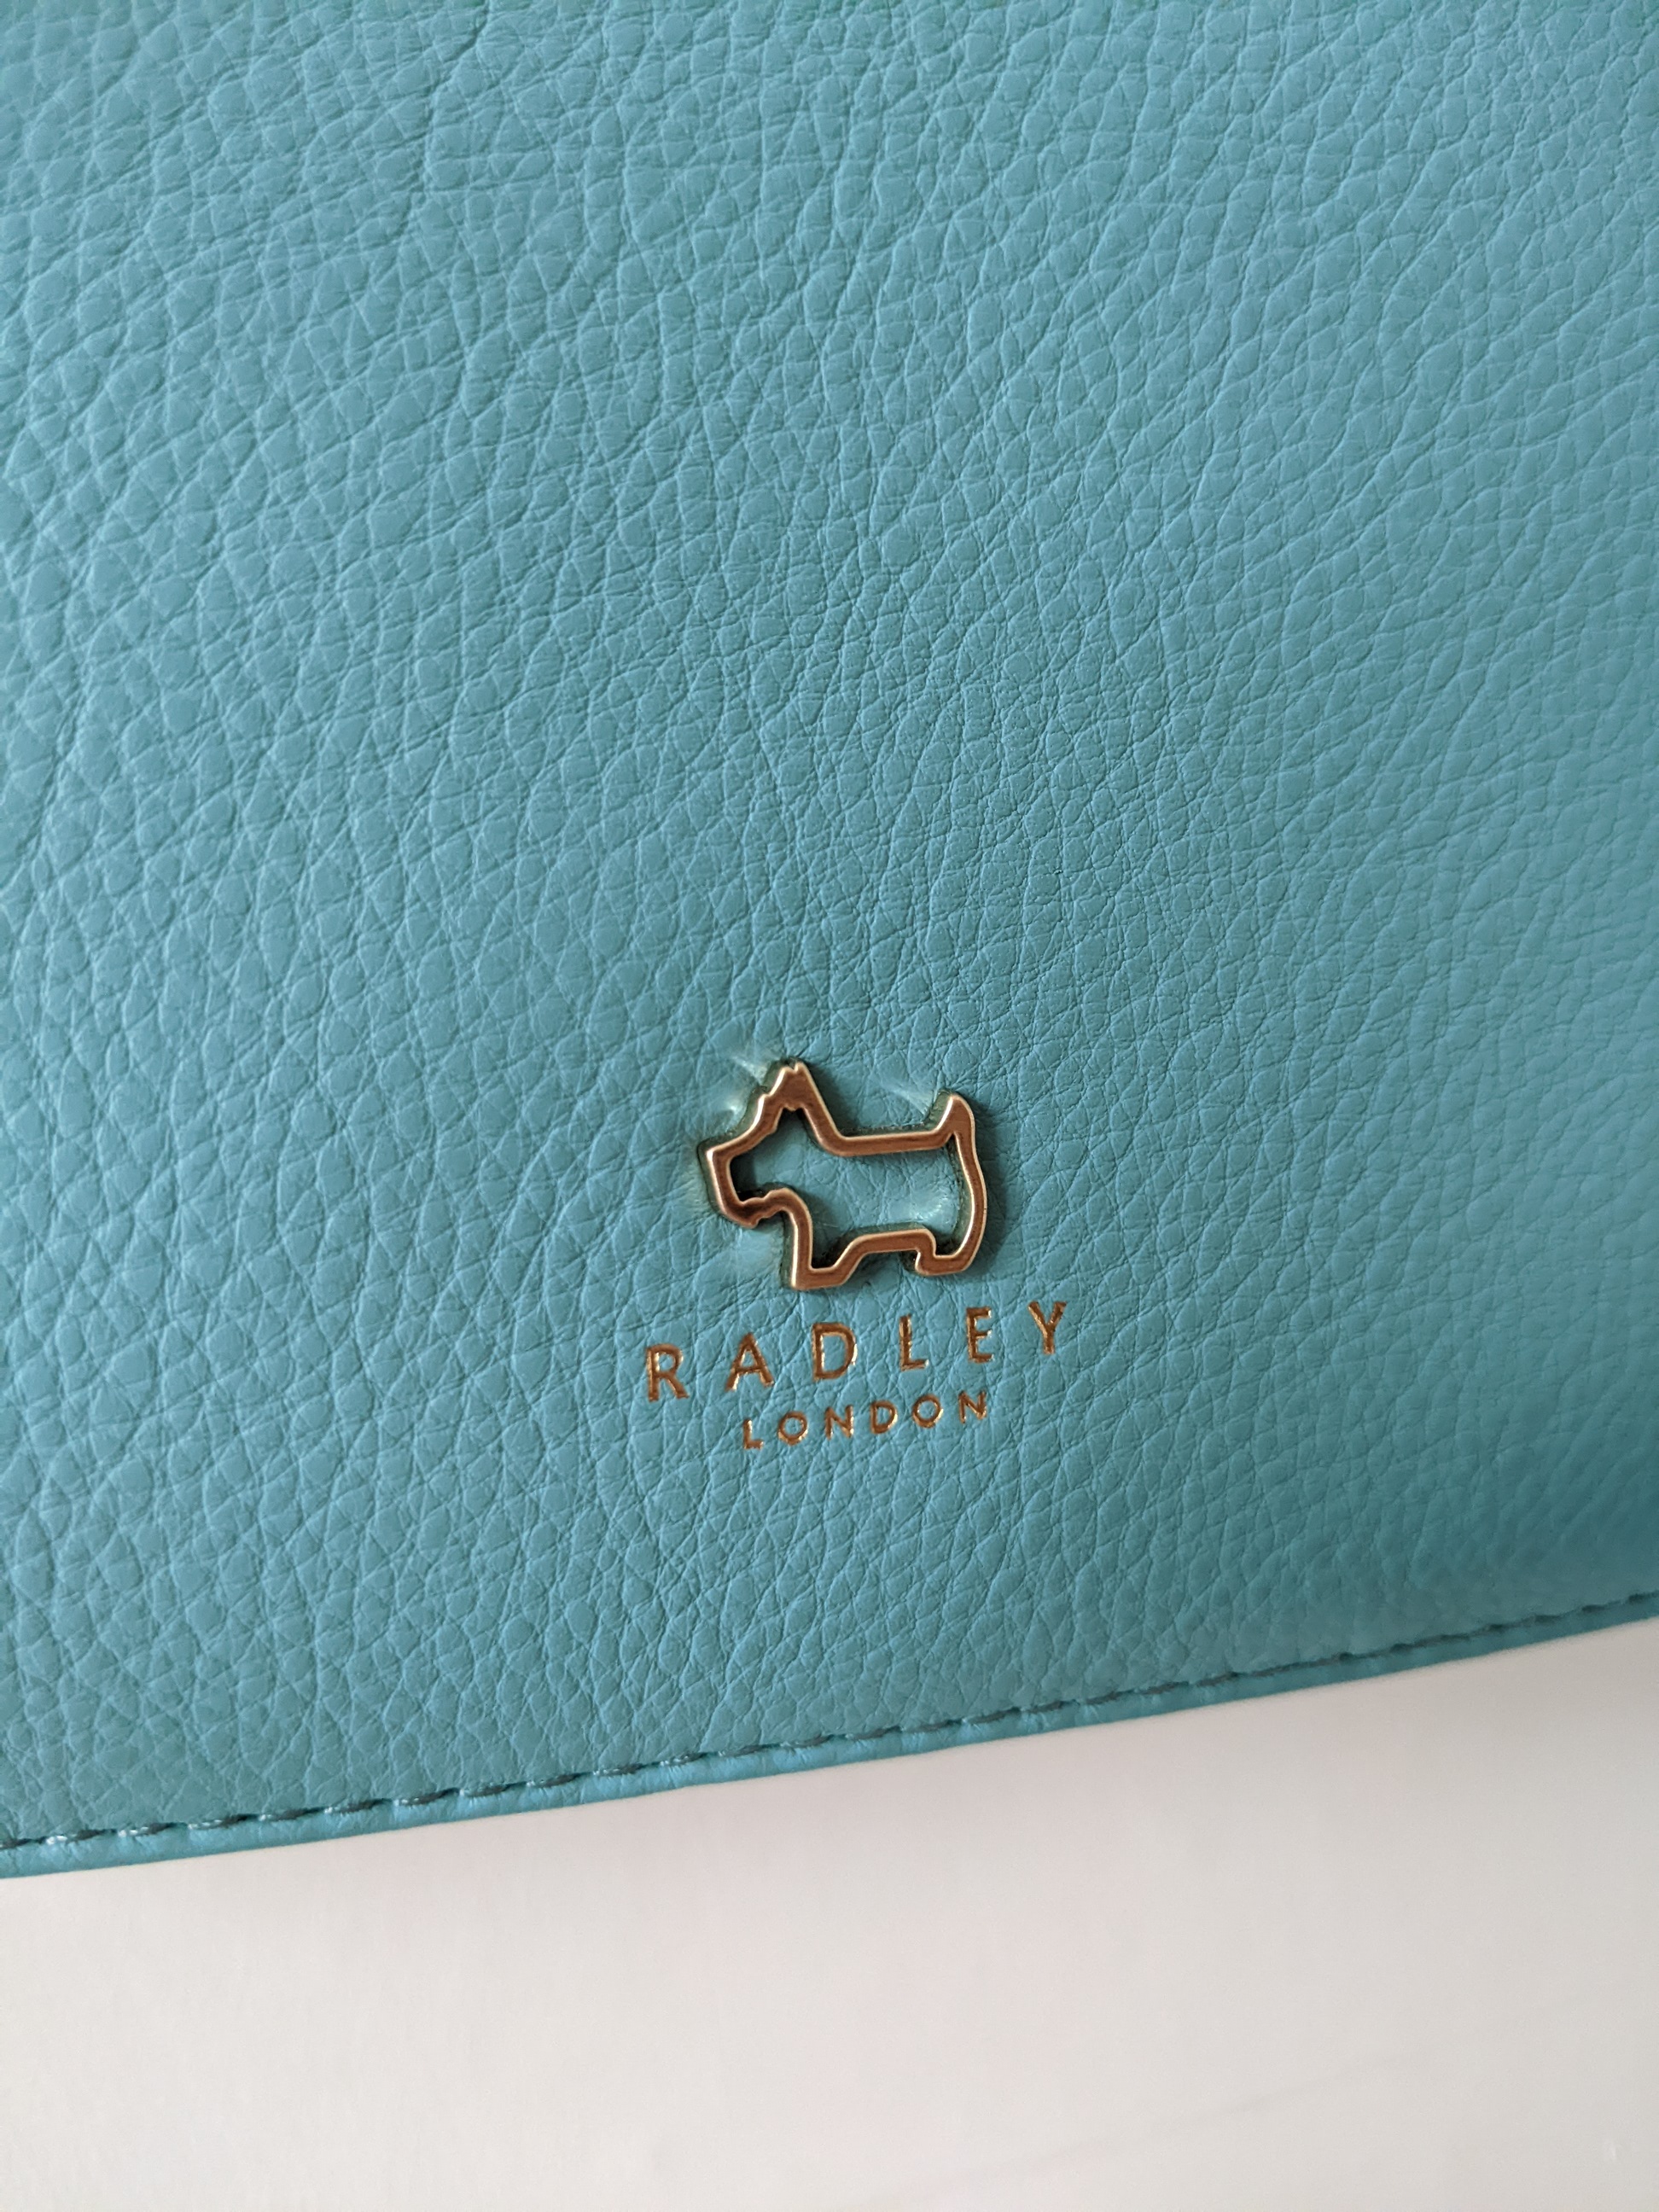 Radley Bag (close-up, logo)